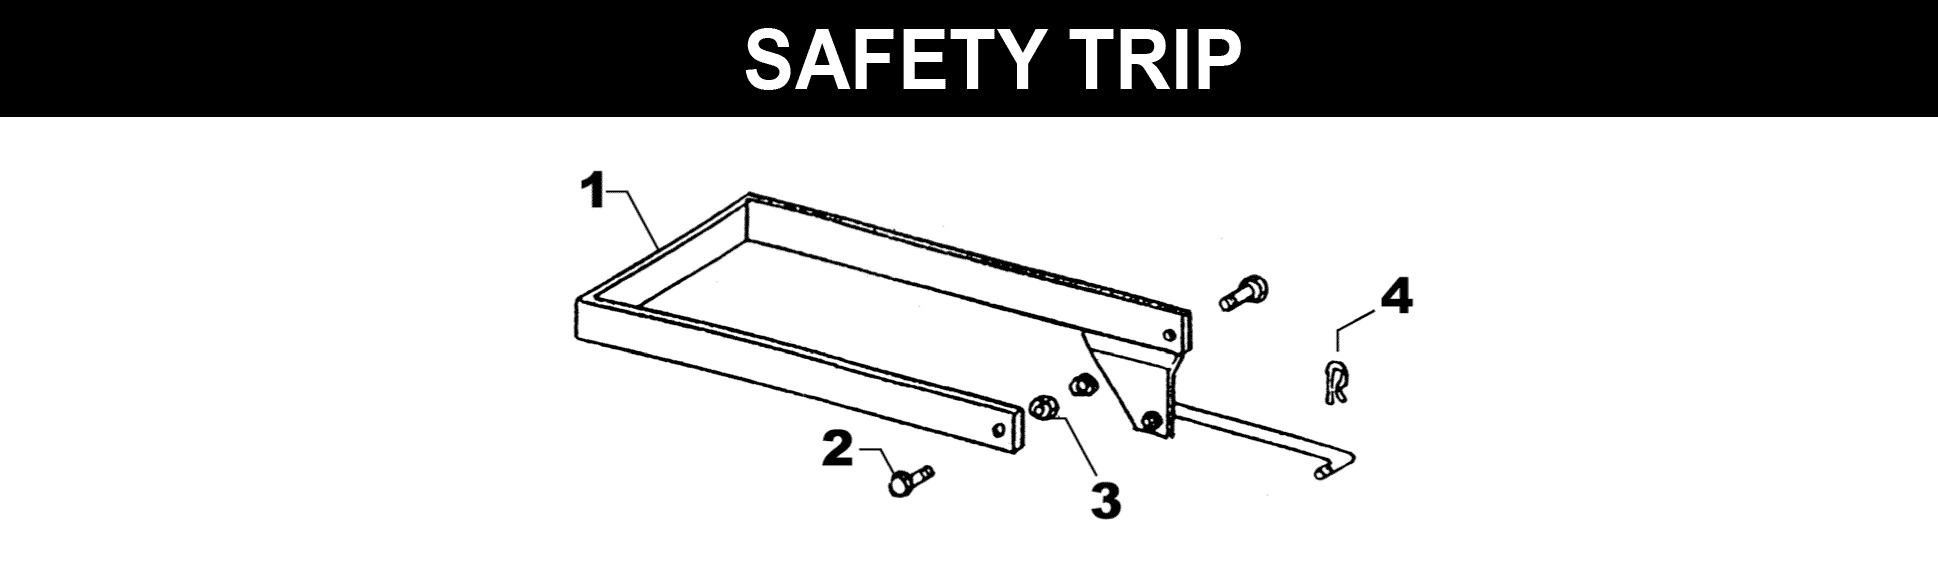 Hitch-N-Go Safety Trip